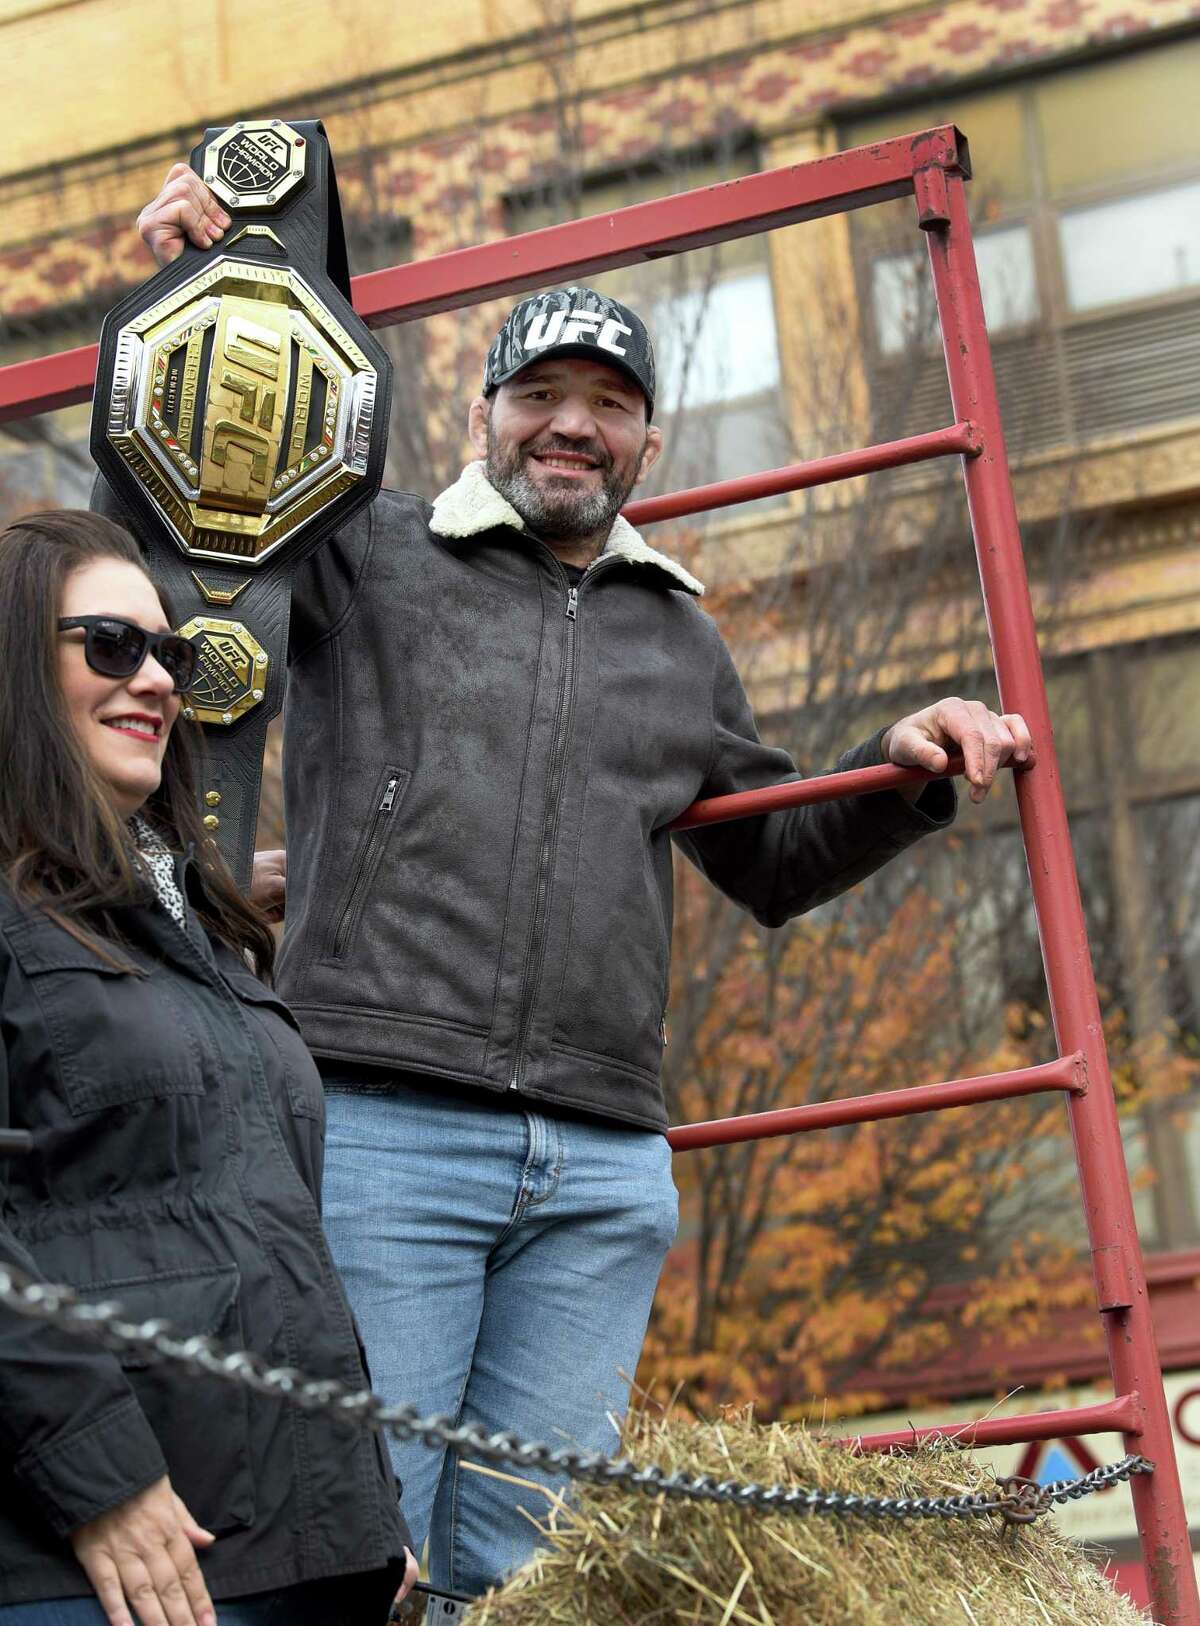 Danbury celebrates UFC champion Glover Teixeira with parade, key to city